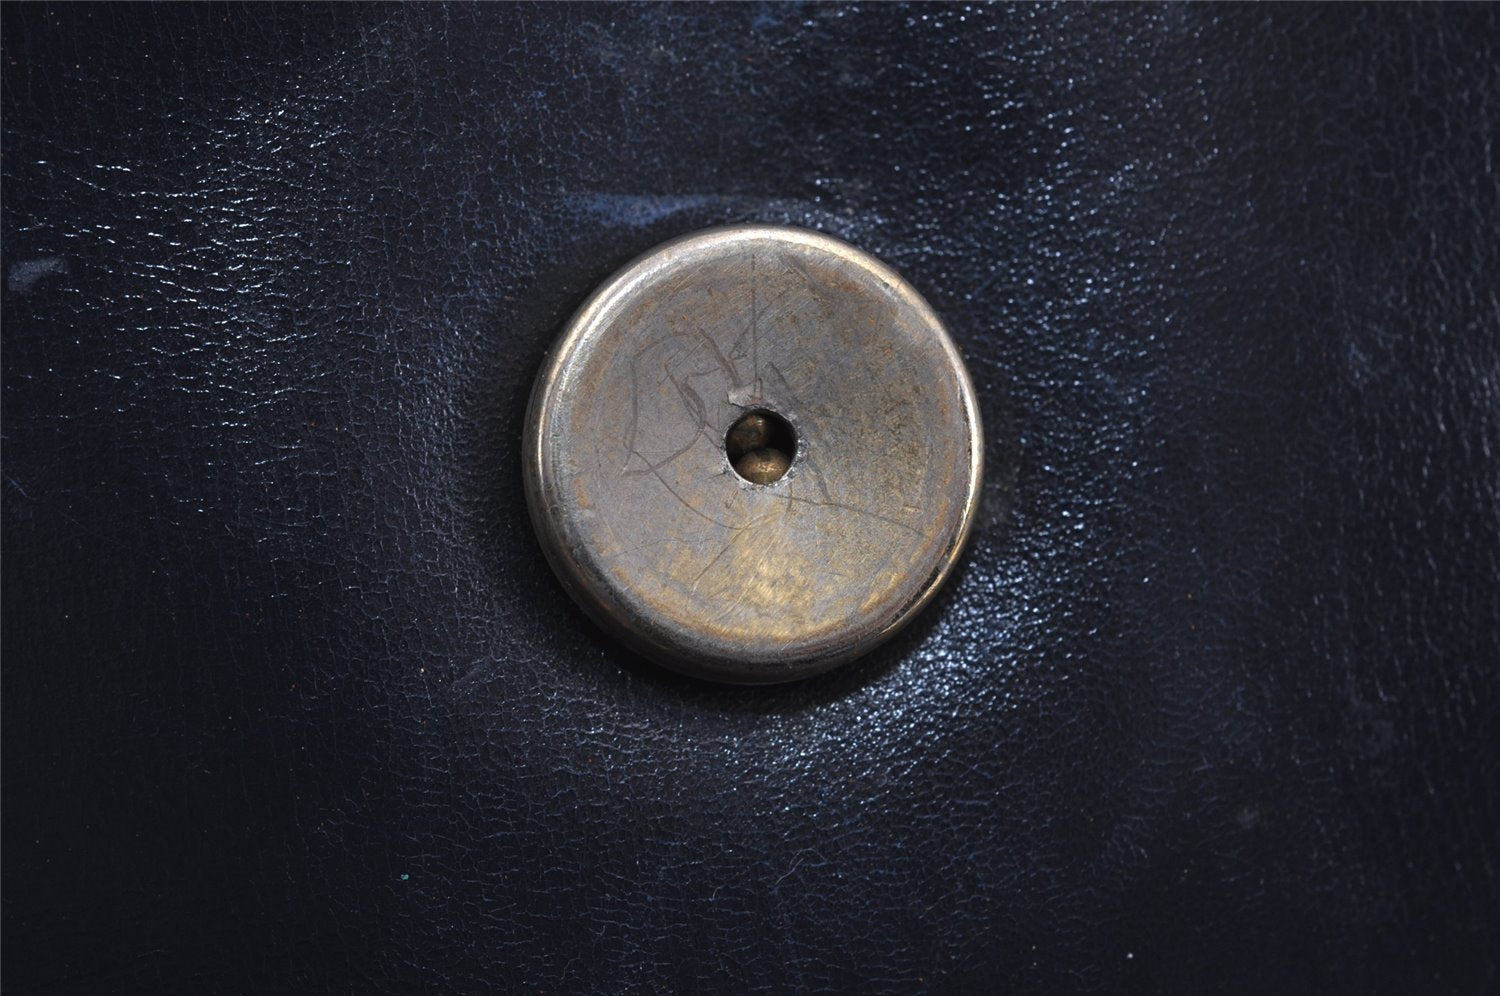 Authentic GUCCI Sherry Line Horsebit Shoulder Bag Purse Leather Navy 9540J